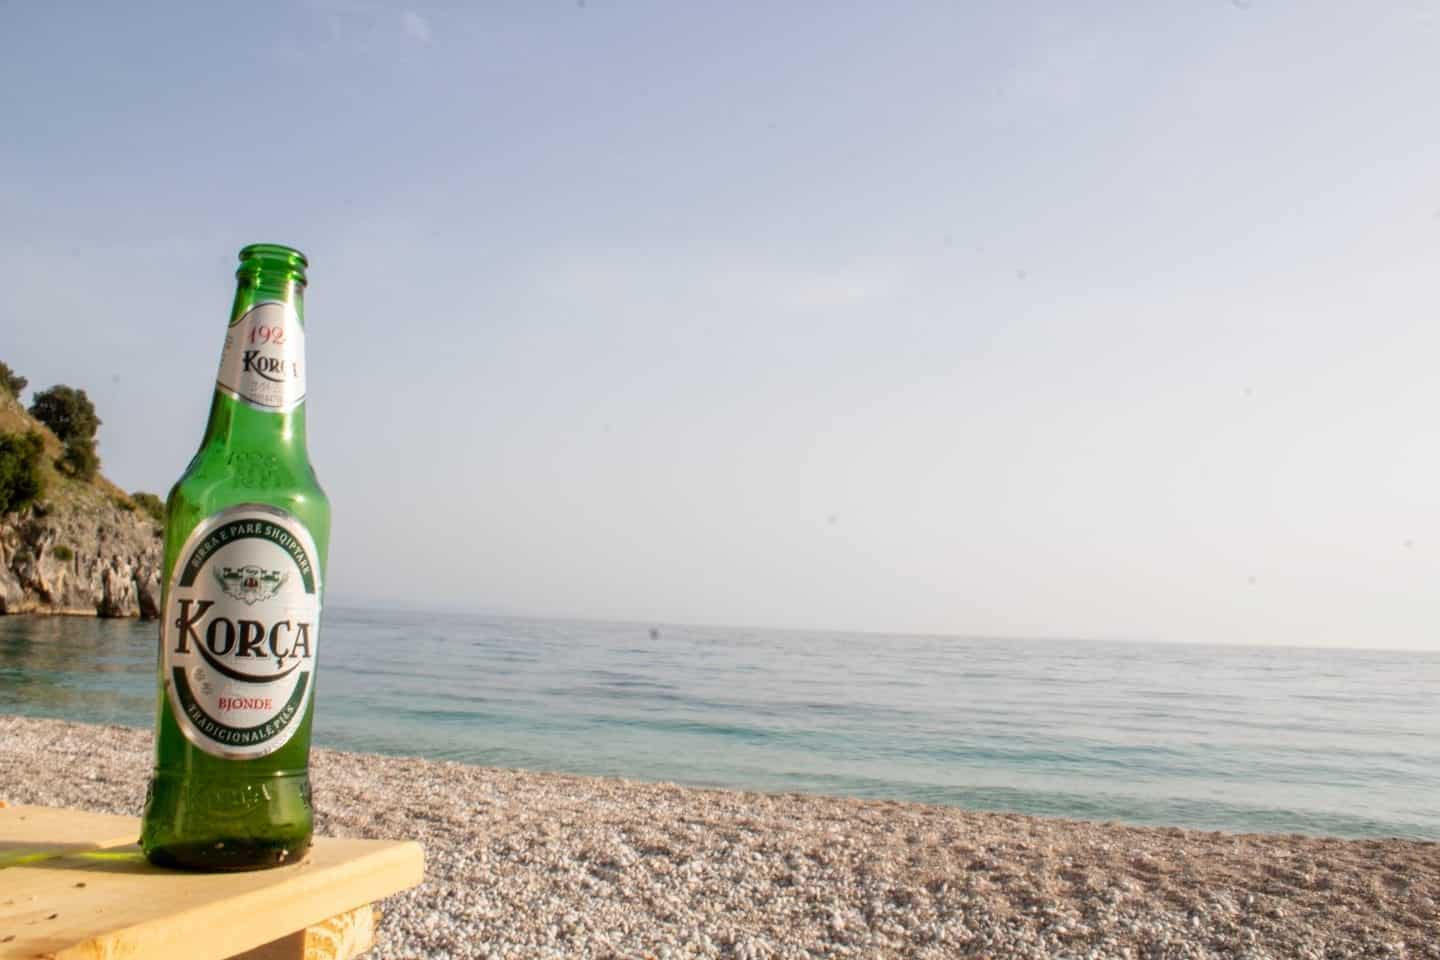 Pruebe las comidas de Albania, una botella de cerveza Korca en una mesa con una playa pedregosa y el océano al fondo